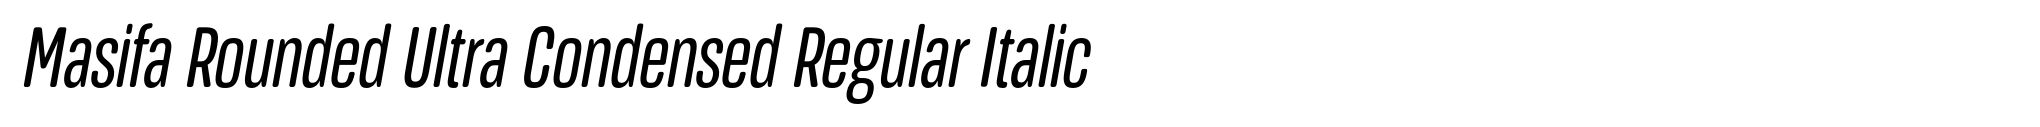 Masifa Rounded Ultra Condensed Regular Italic image